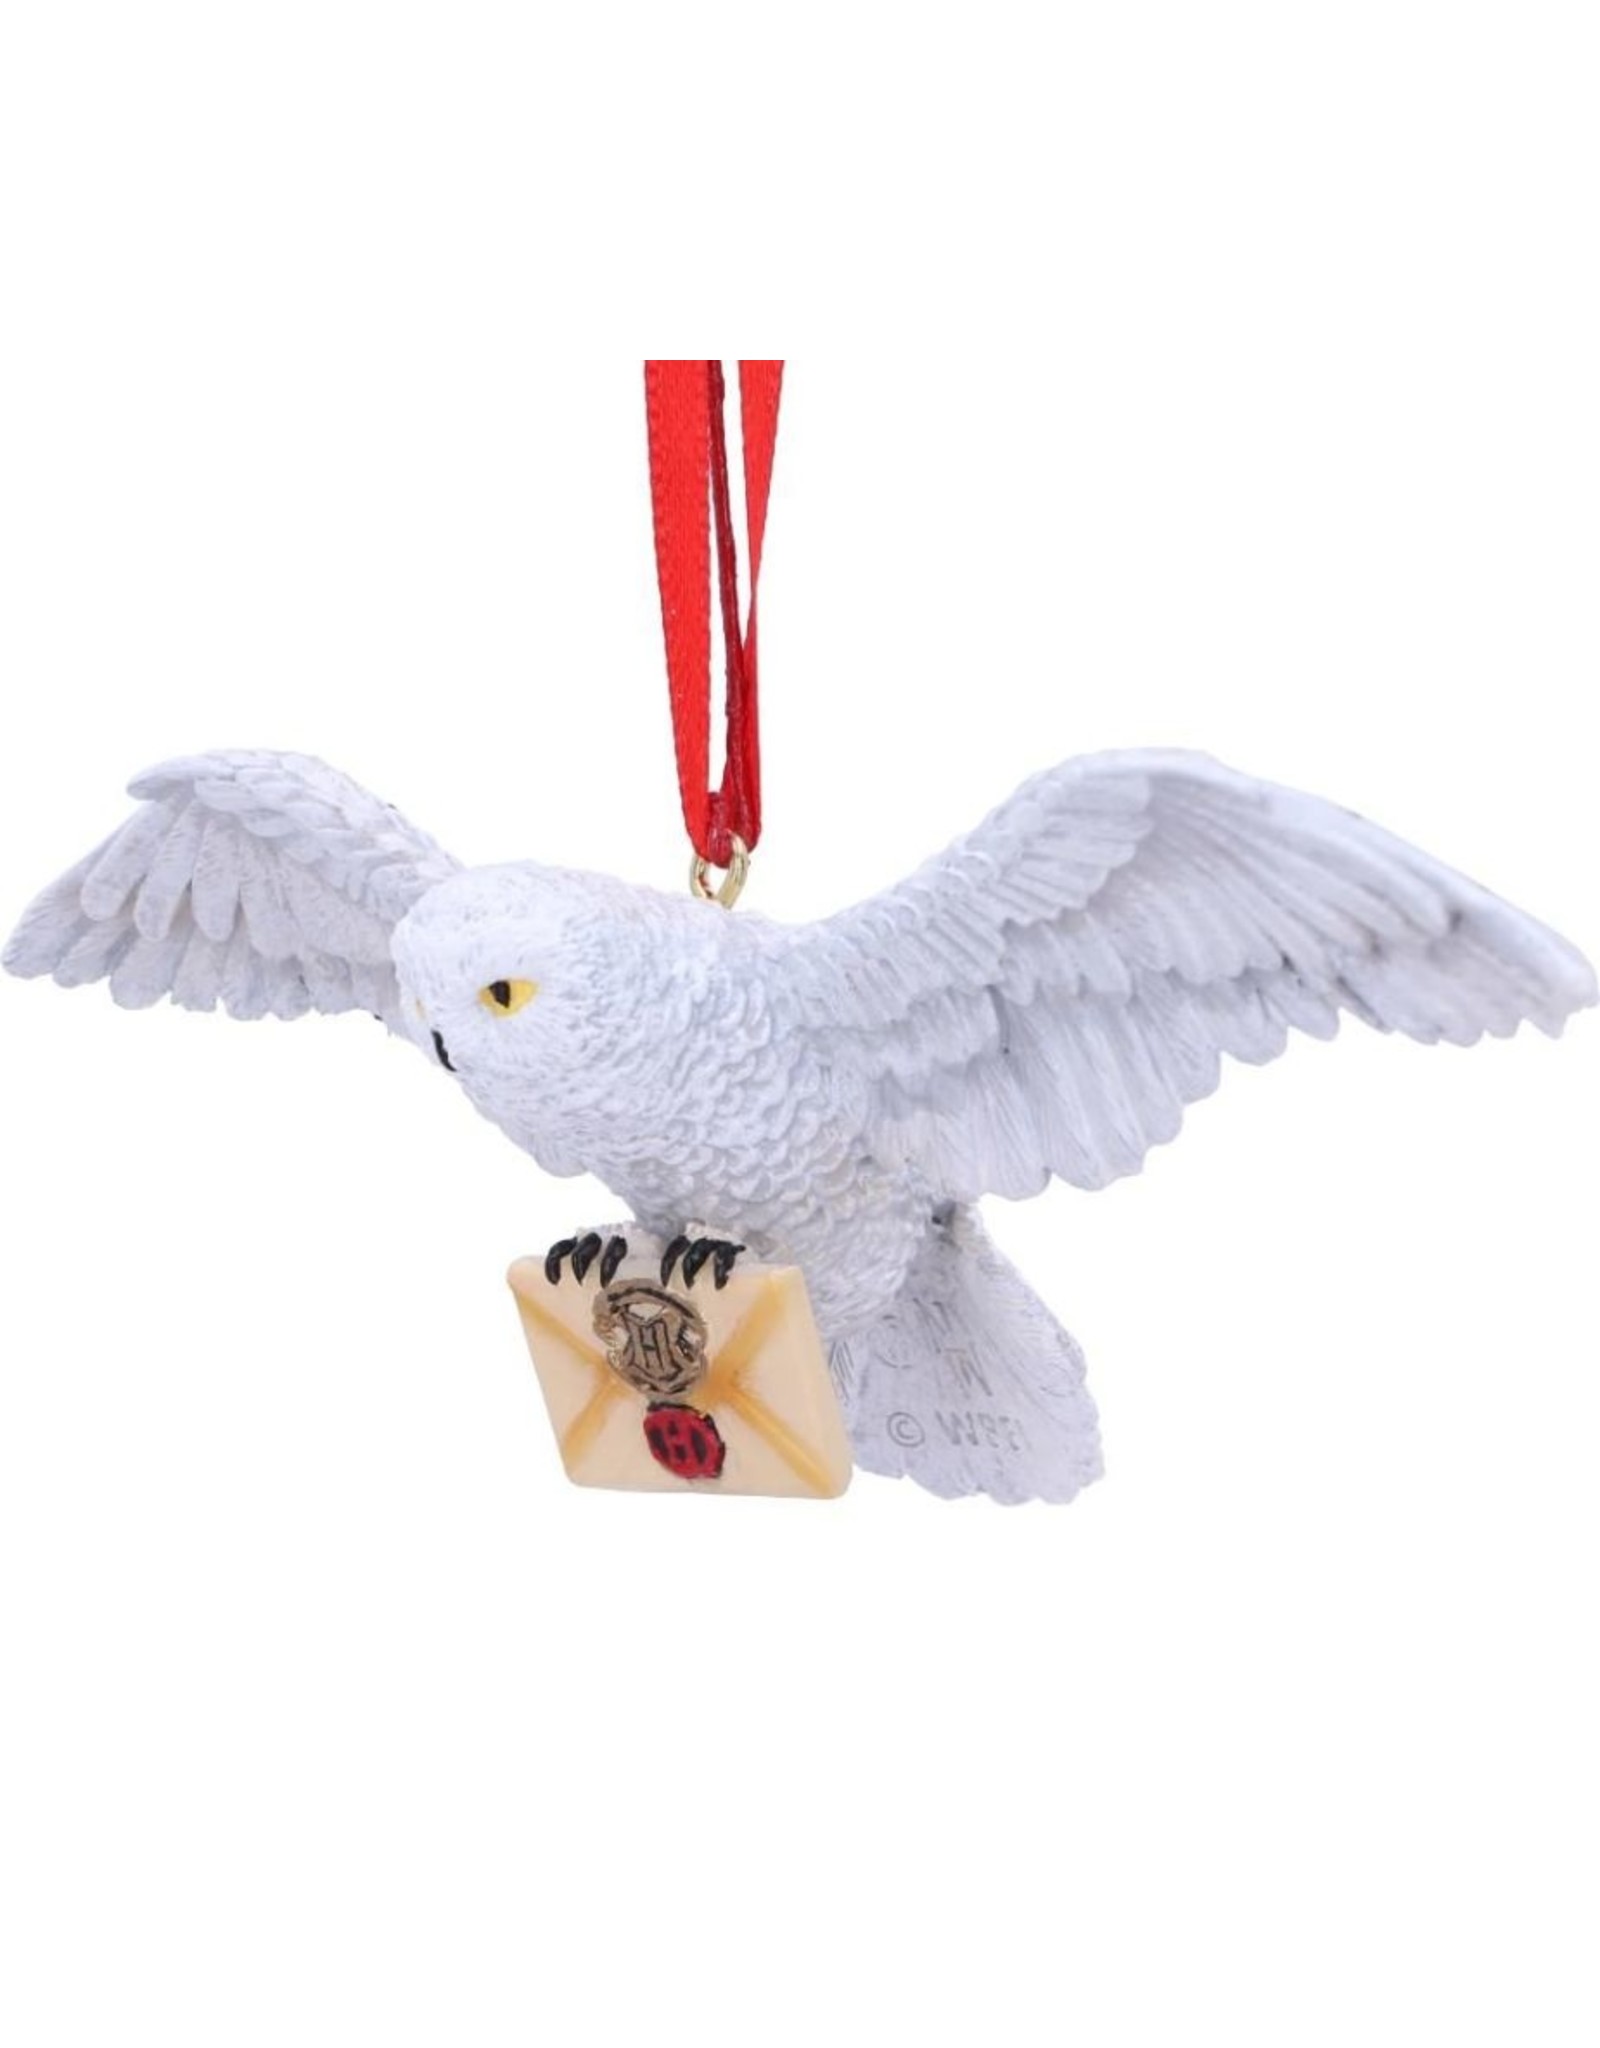 NemesisNow Miscellaneous - Harry Potter Hedwig Hangend Ornament 13cm